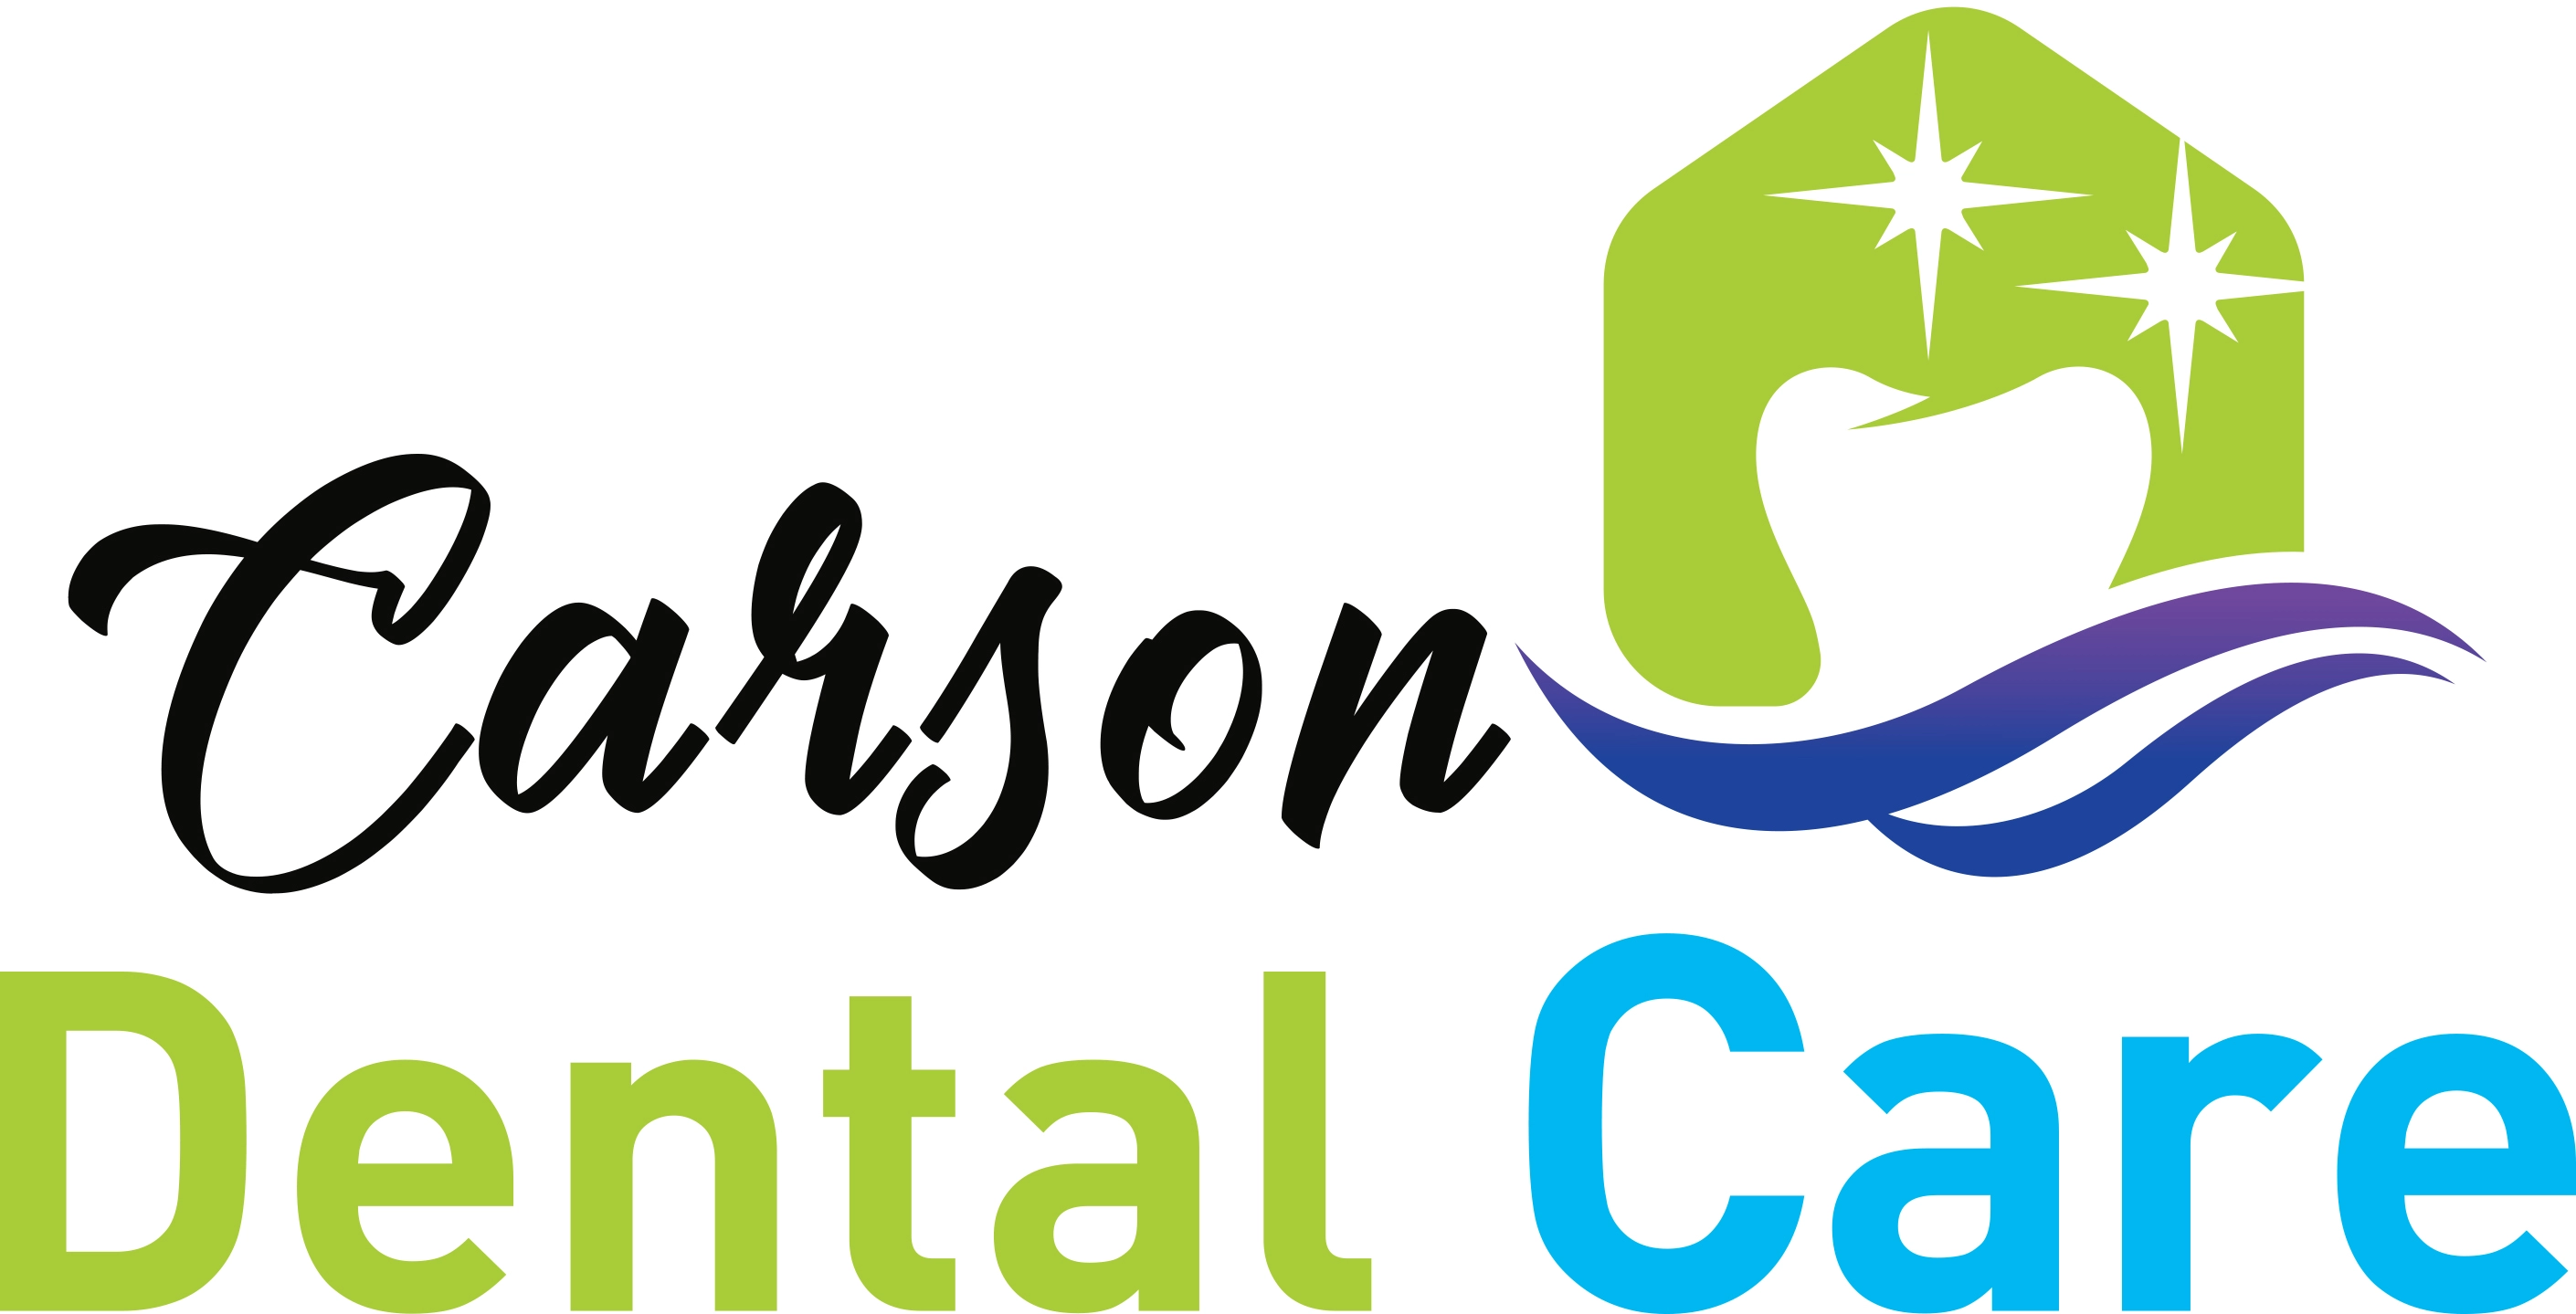 132-carson-dental-care-logo.jpg